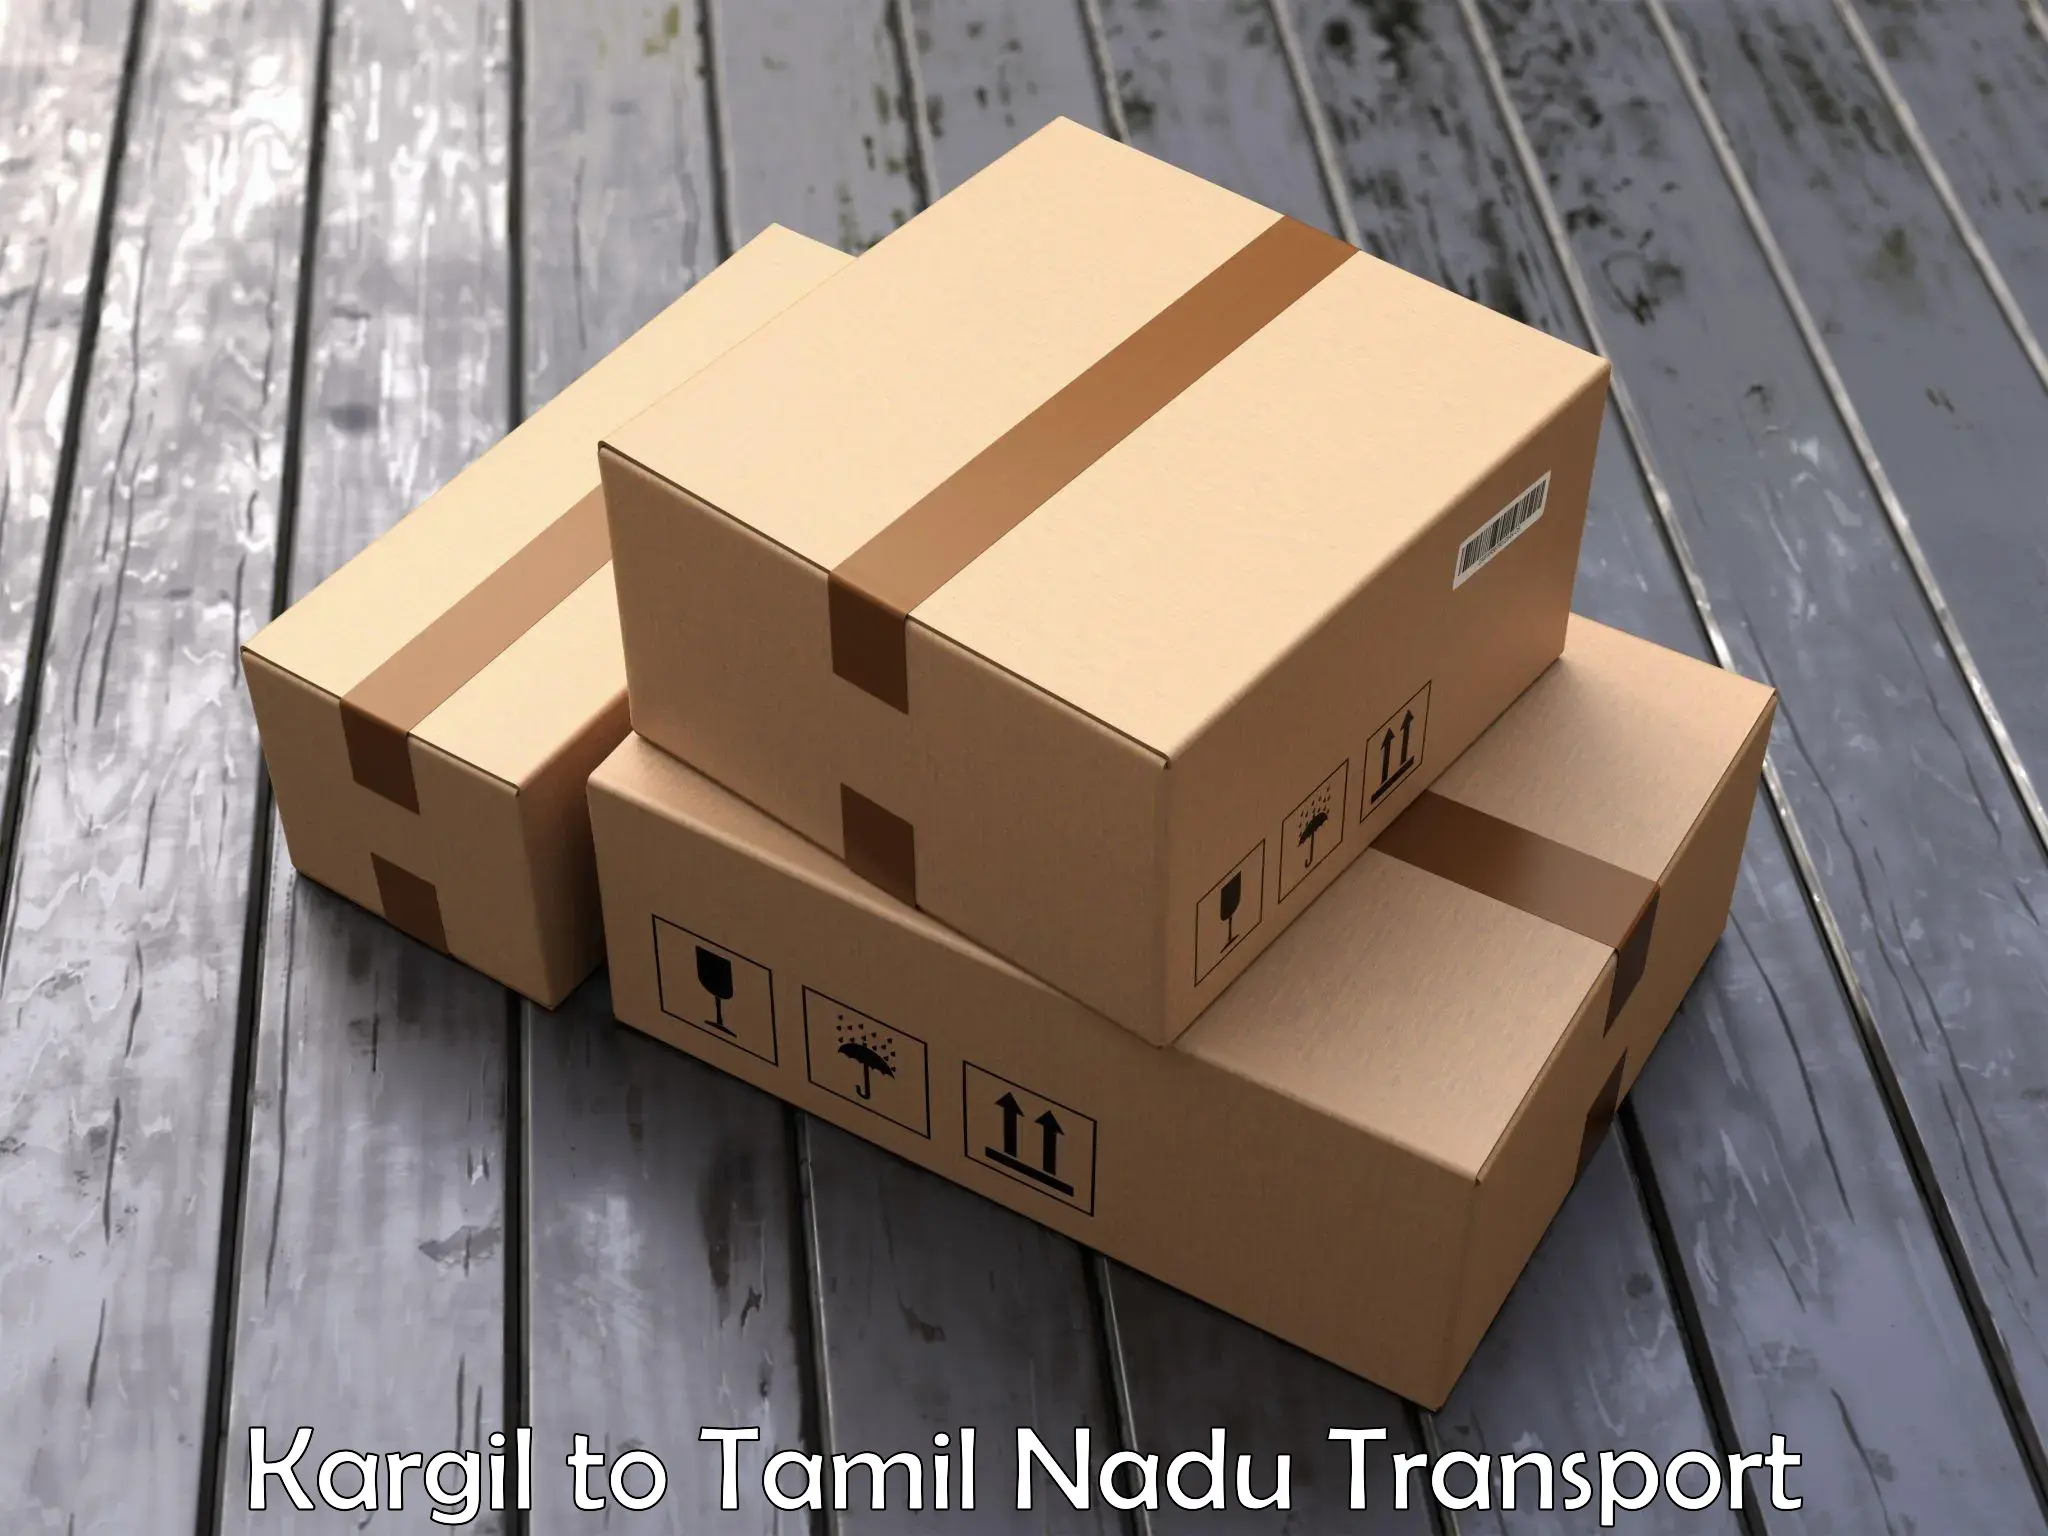 Goods transport services Kargil to Palladam